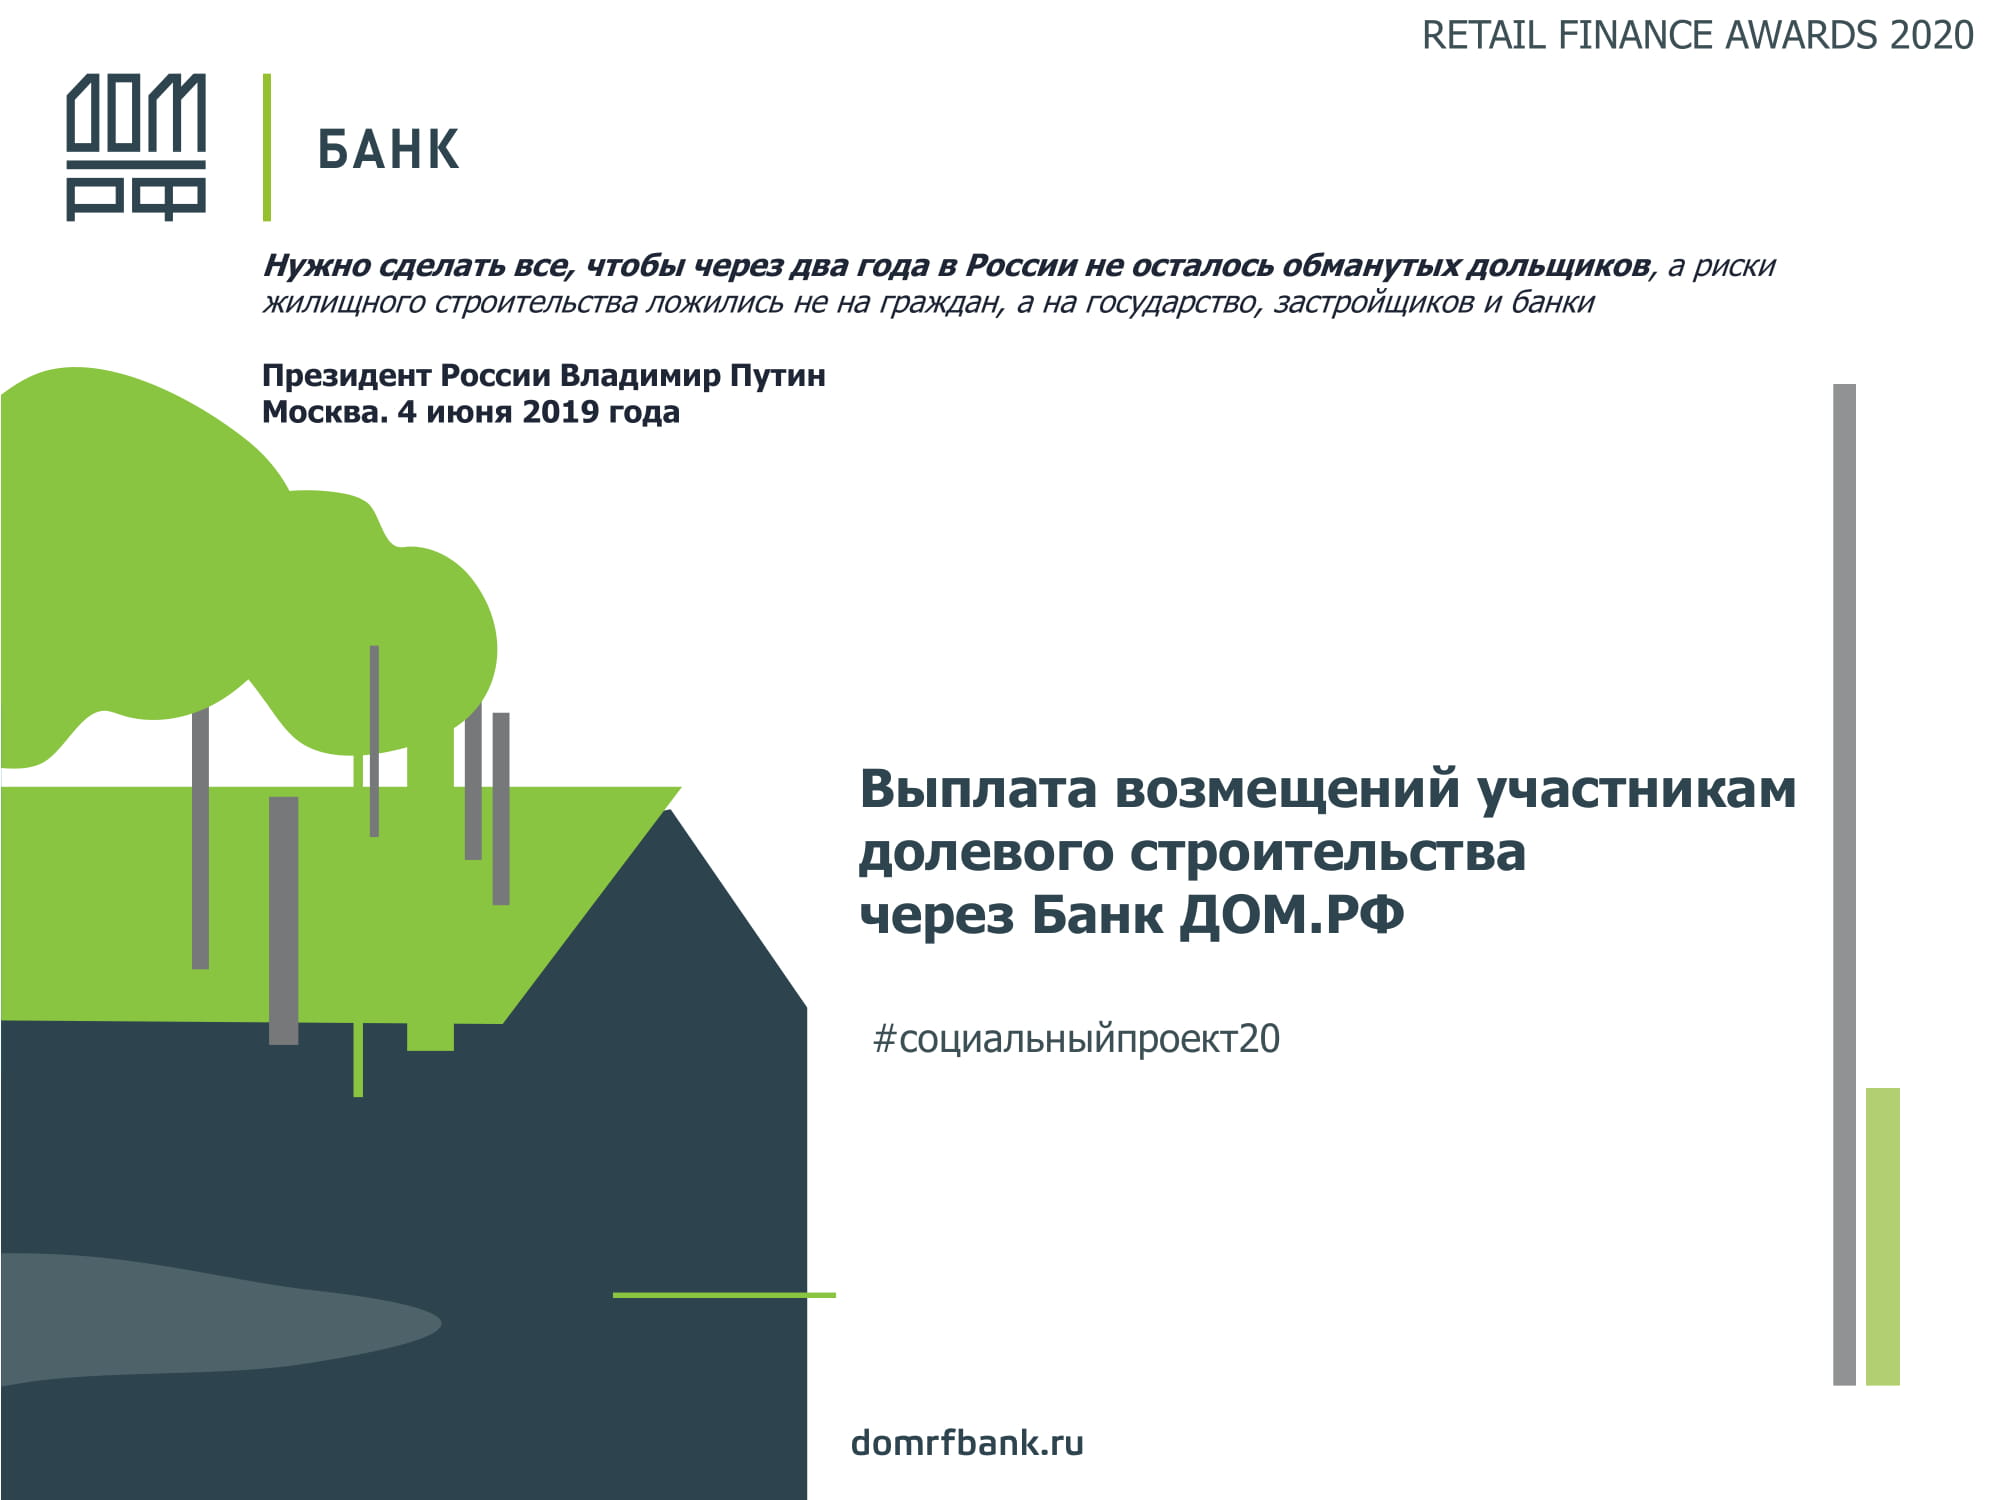 Выплата возмещений участникам долевого строительства через Банк ДОМ.РФ -  MessageGuru